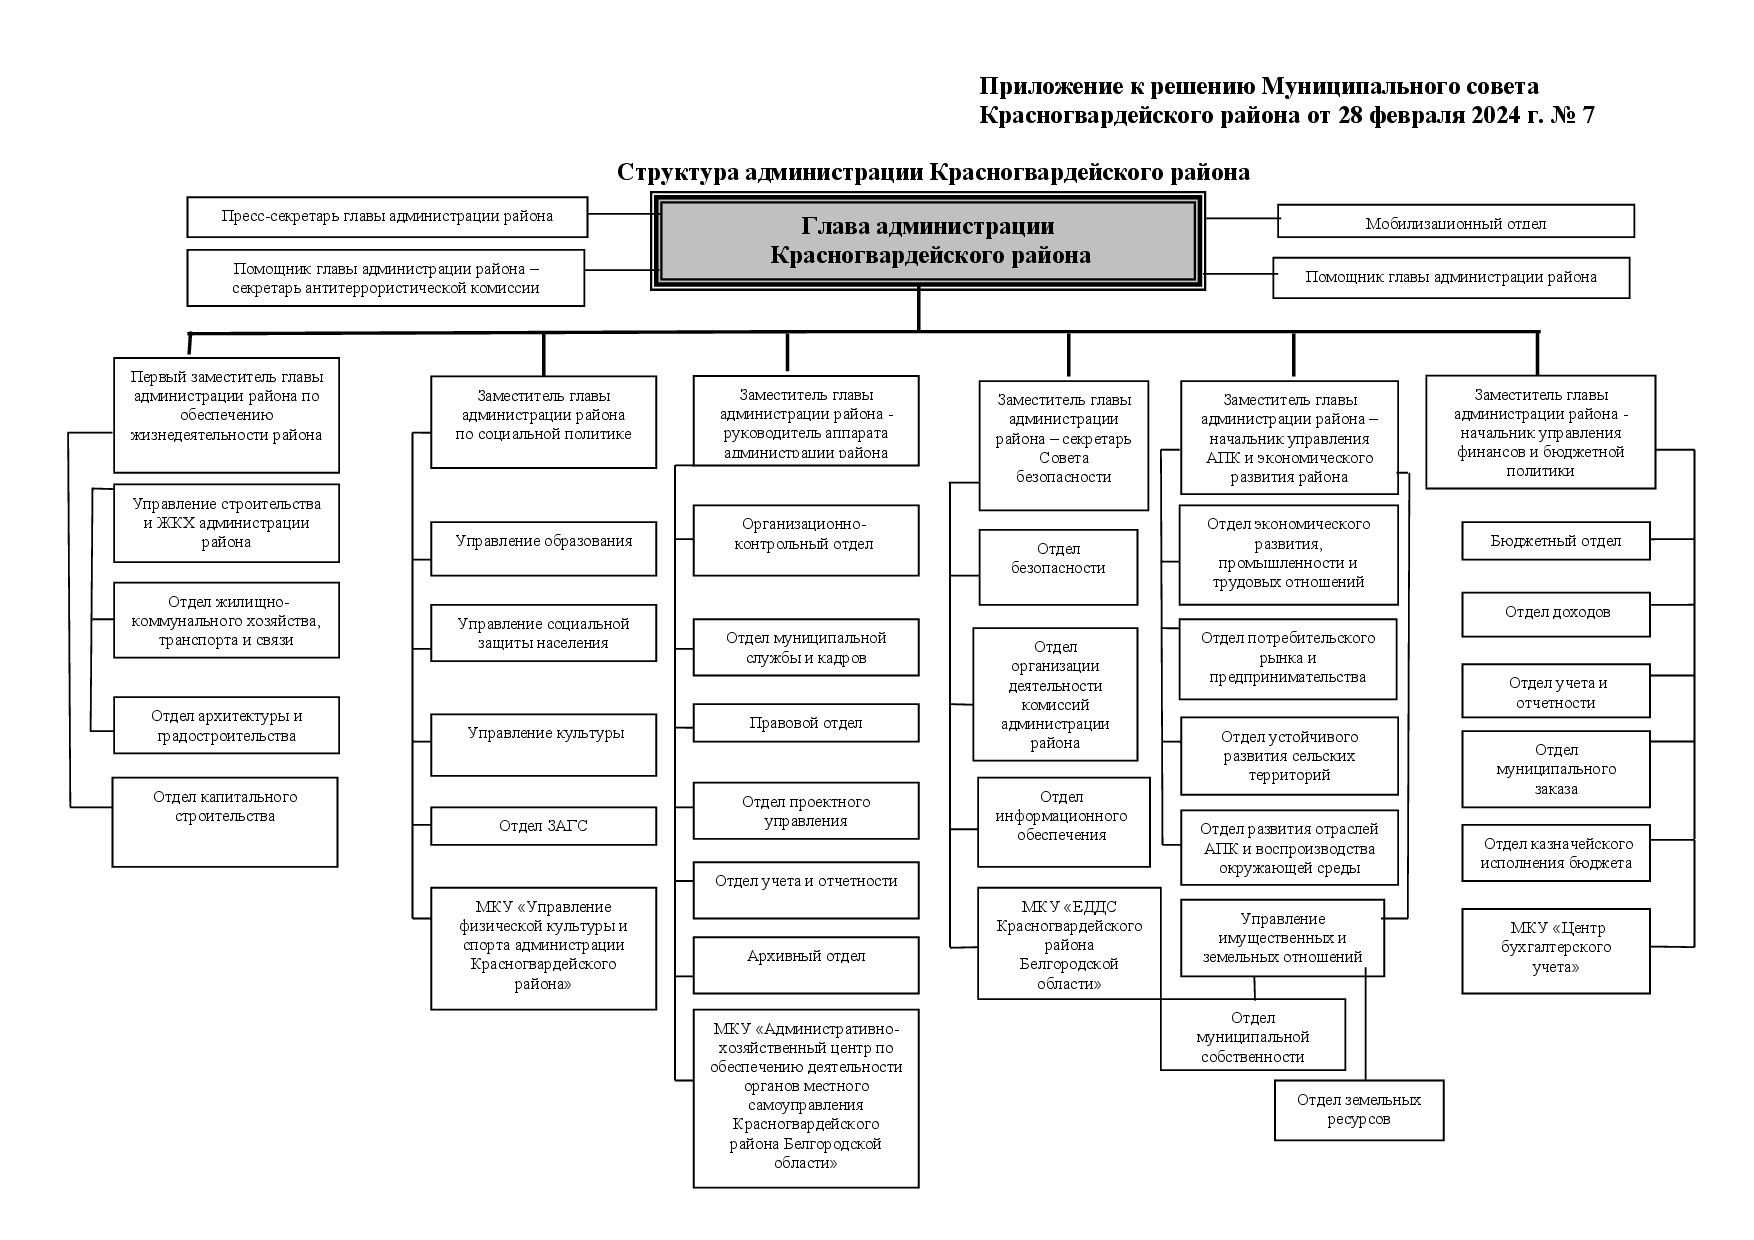 Структура администрации Красногвардейского района (Решение Муниципального совета Красногвардейского района от 28.02.2022 г. № 7).